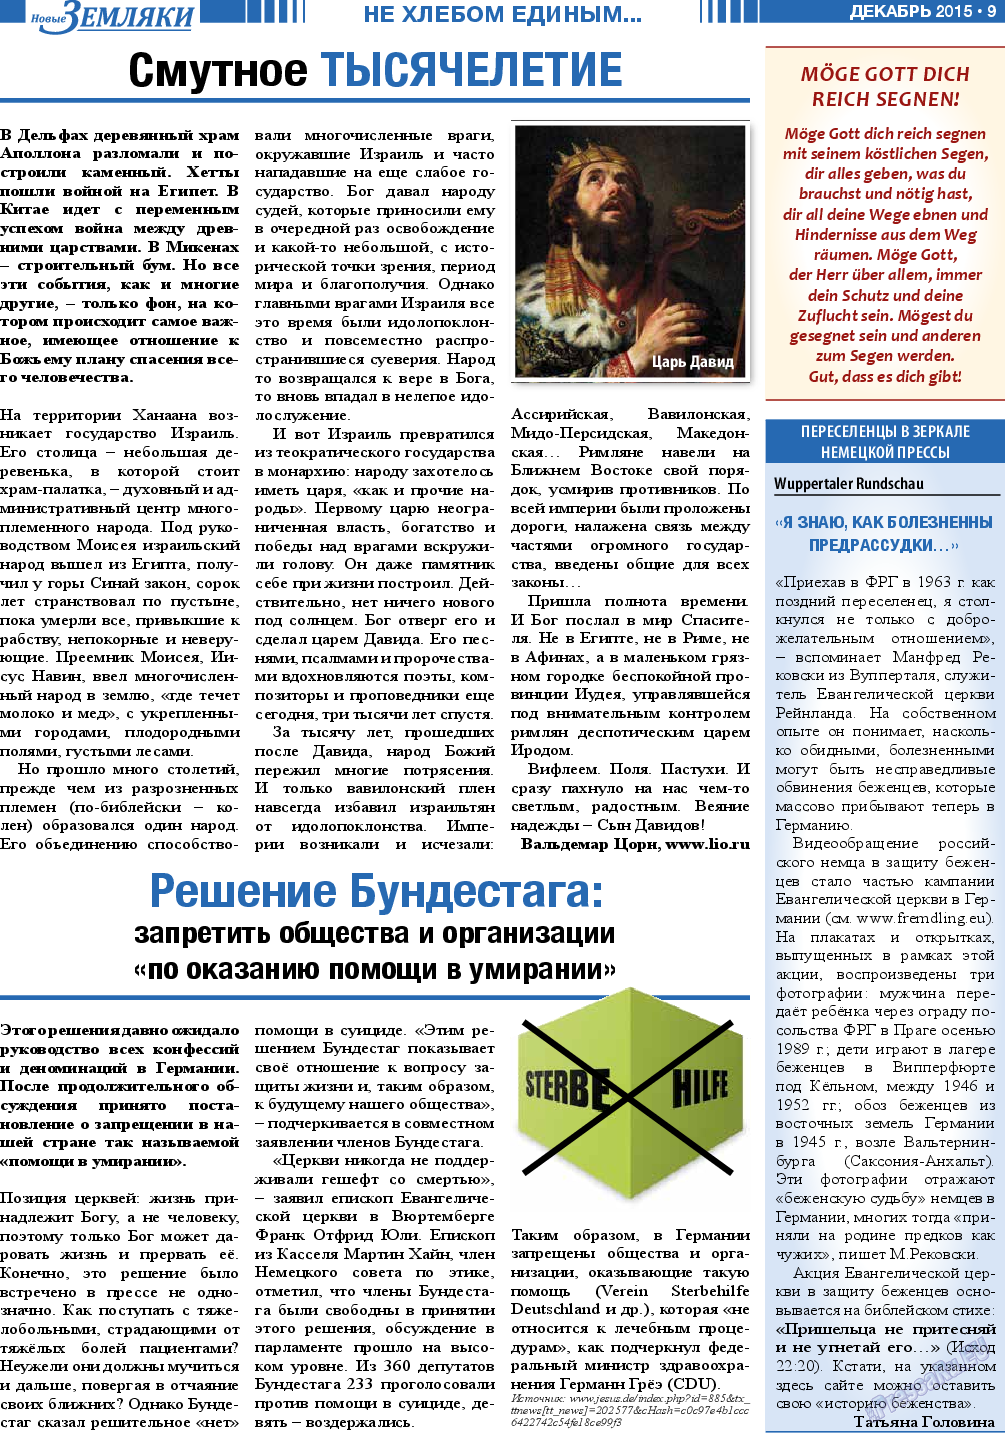 Новые Земляки, газета. 2015 №12 стр.9